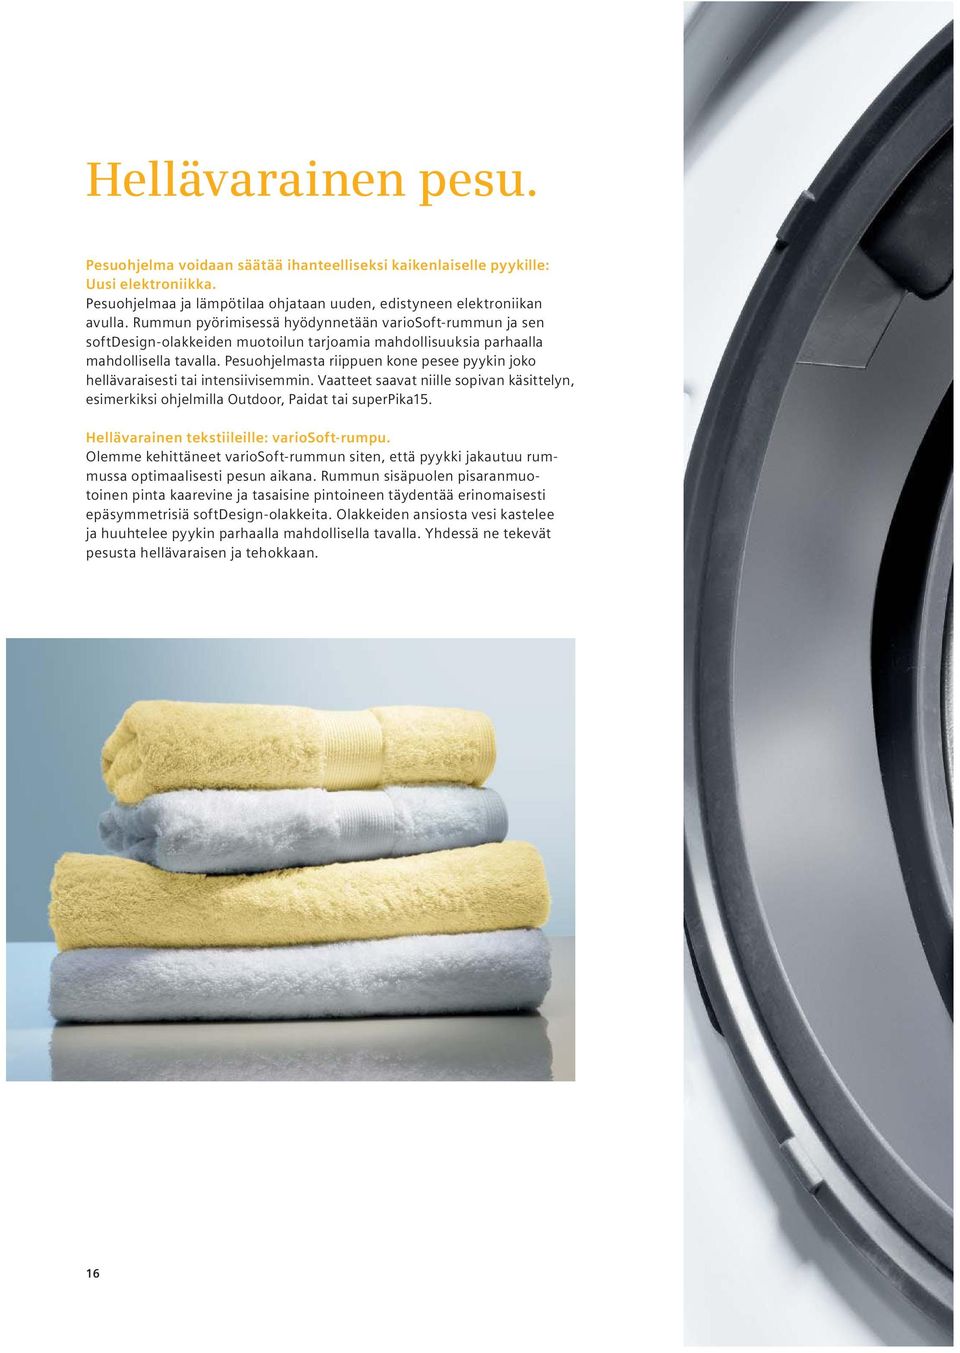 Pesuohjelmasta riippuen kone pesee pyykin joko hellävaraisesti tai intensiivisemmin. Vaatteet saavat niille sopivan käsittelyn, esimerkiksi ohjelmilla Outdoor, Paidat tai superpika15.